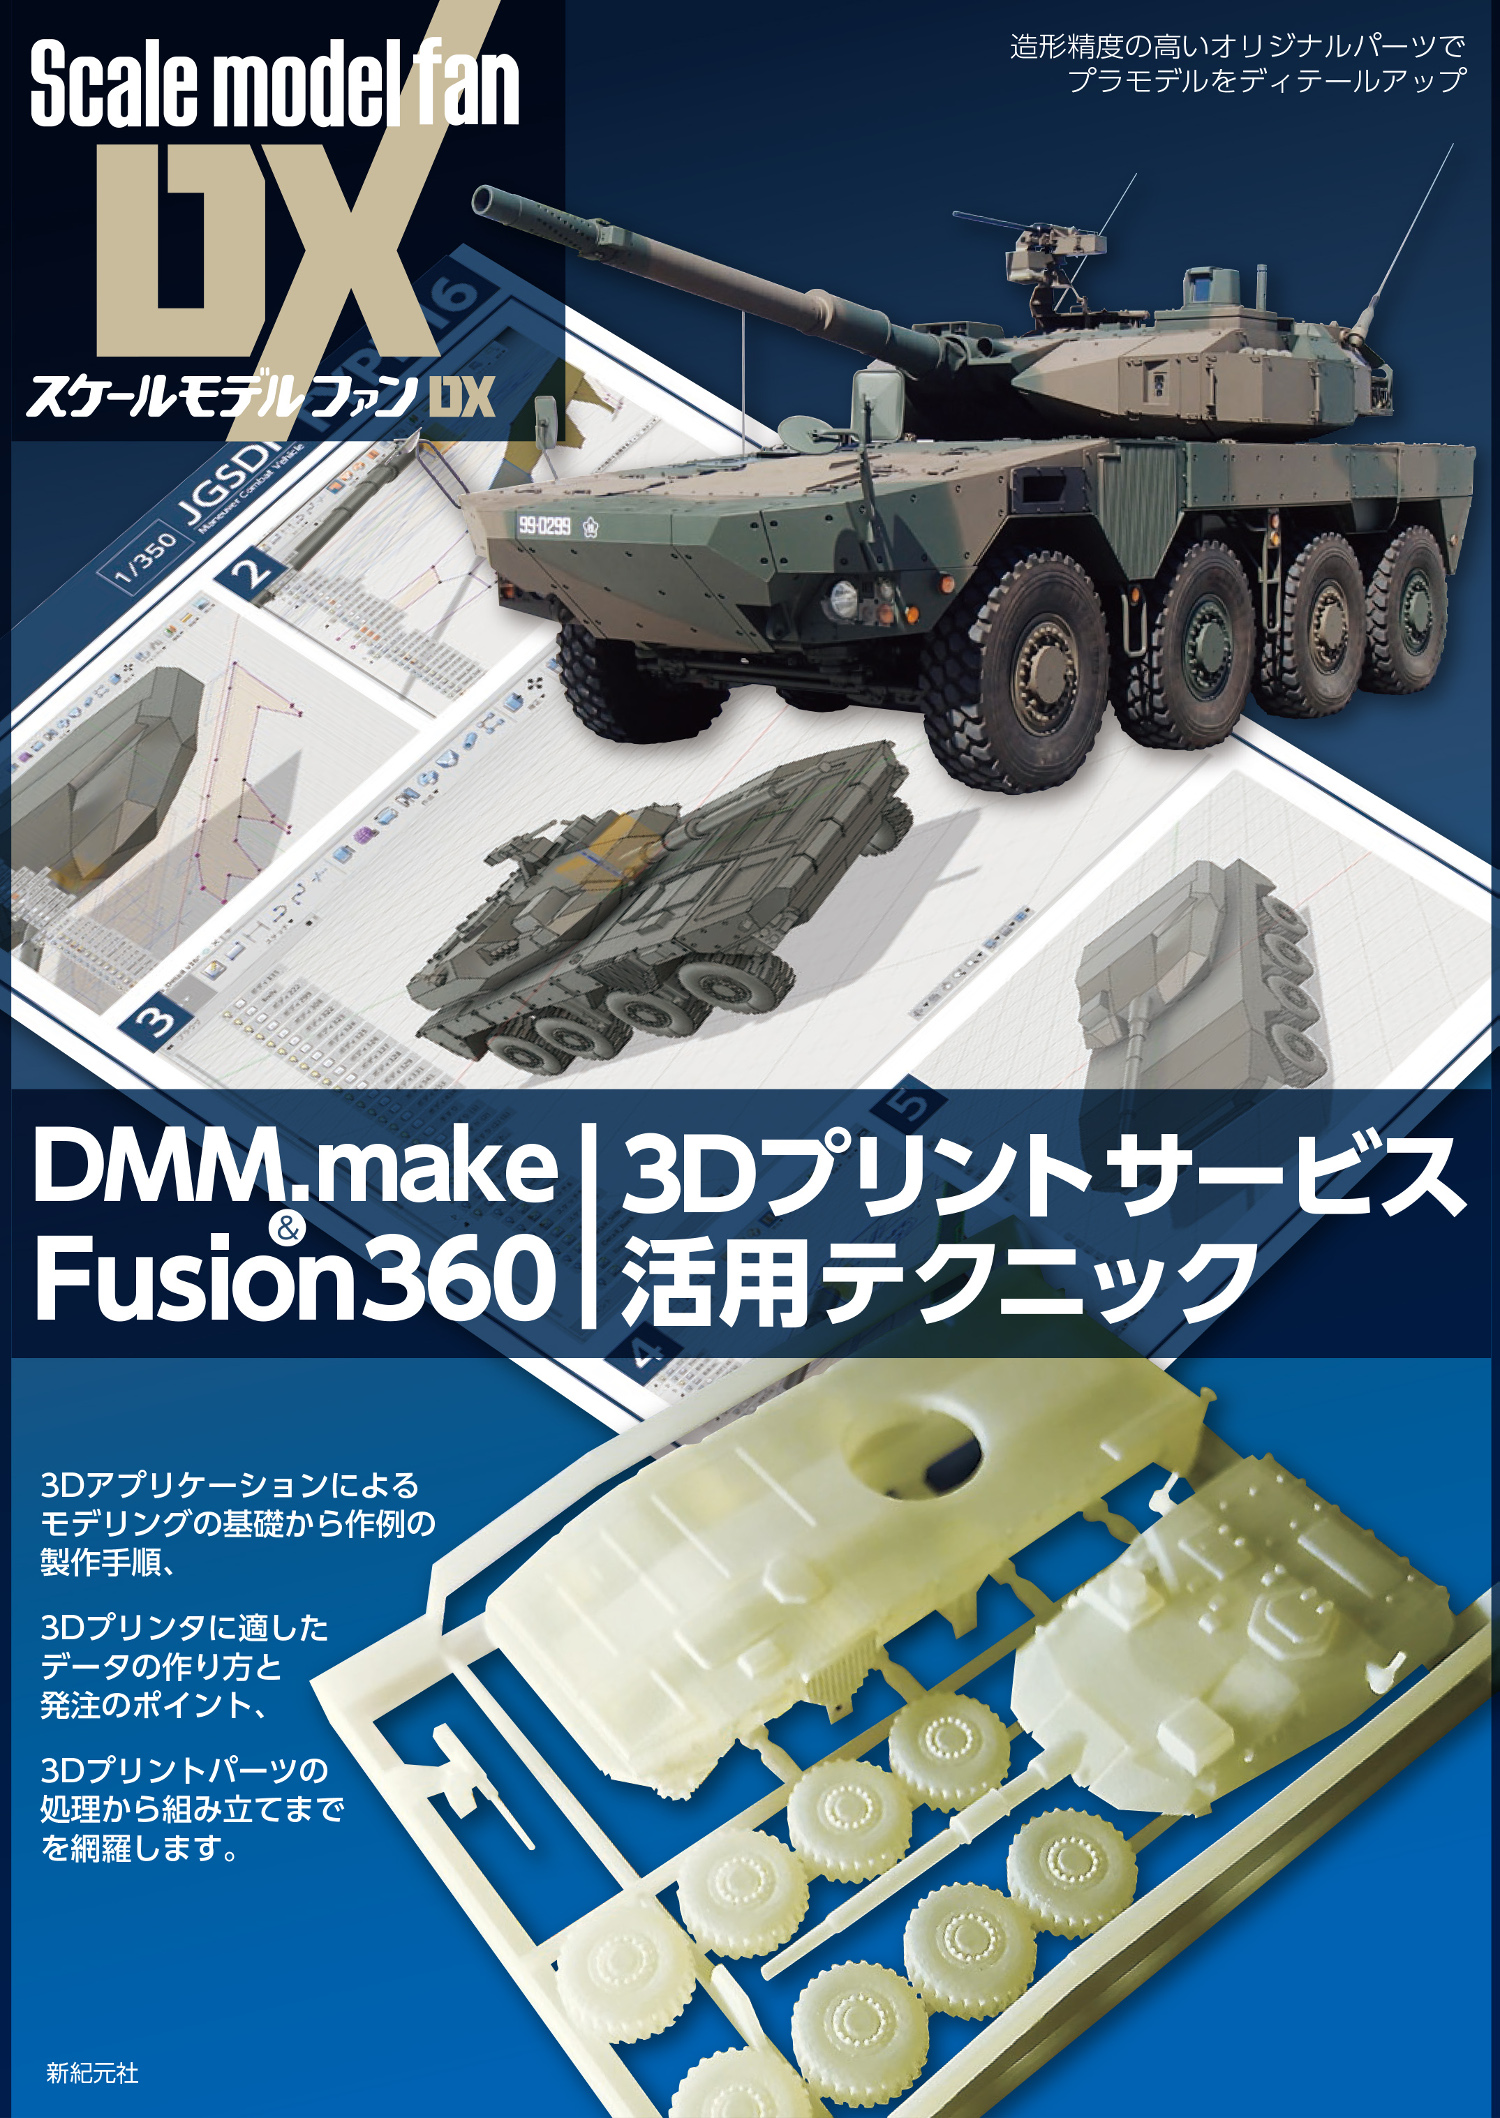 DMM.make & Fusion360 3Dプリントサービス活用テクニック